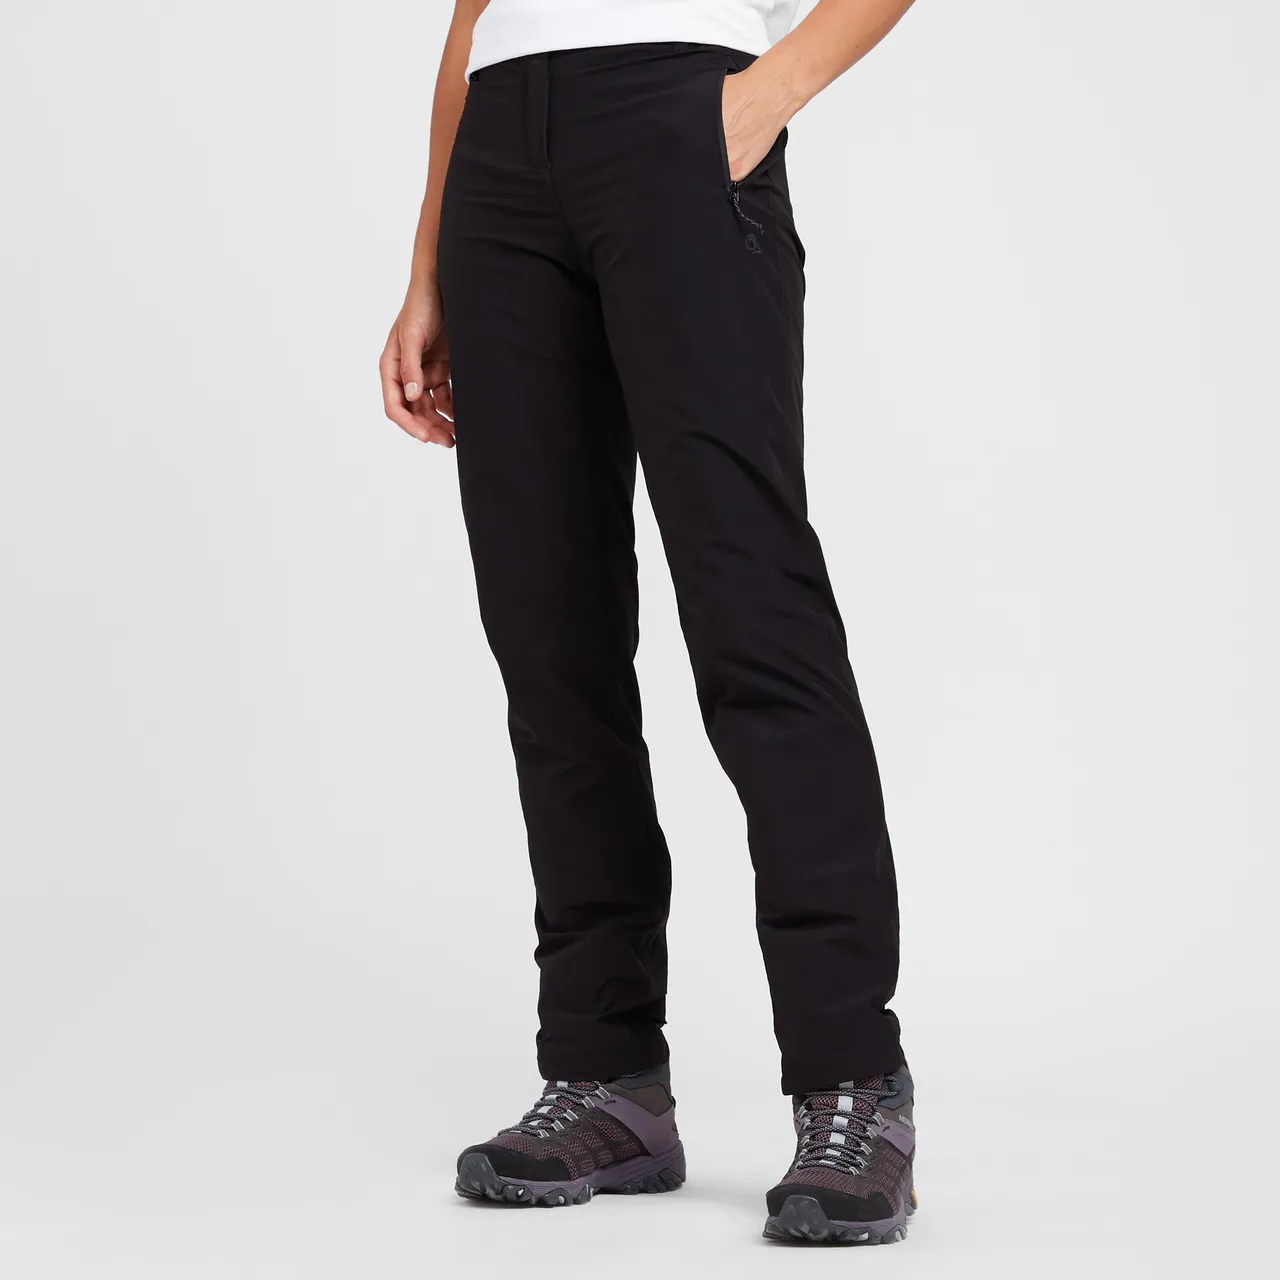 Women's Kiwi Pro II Waterproof Trousers, Black